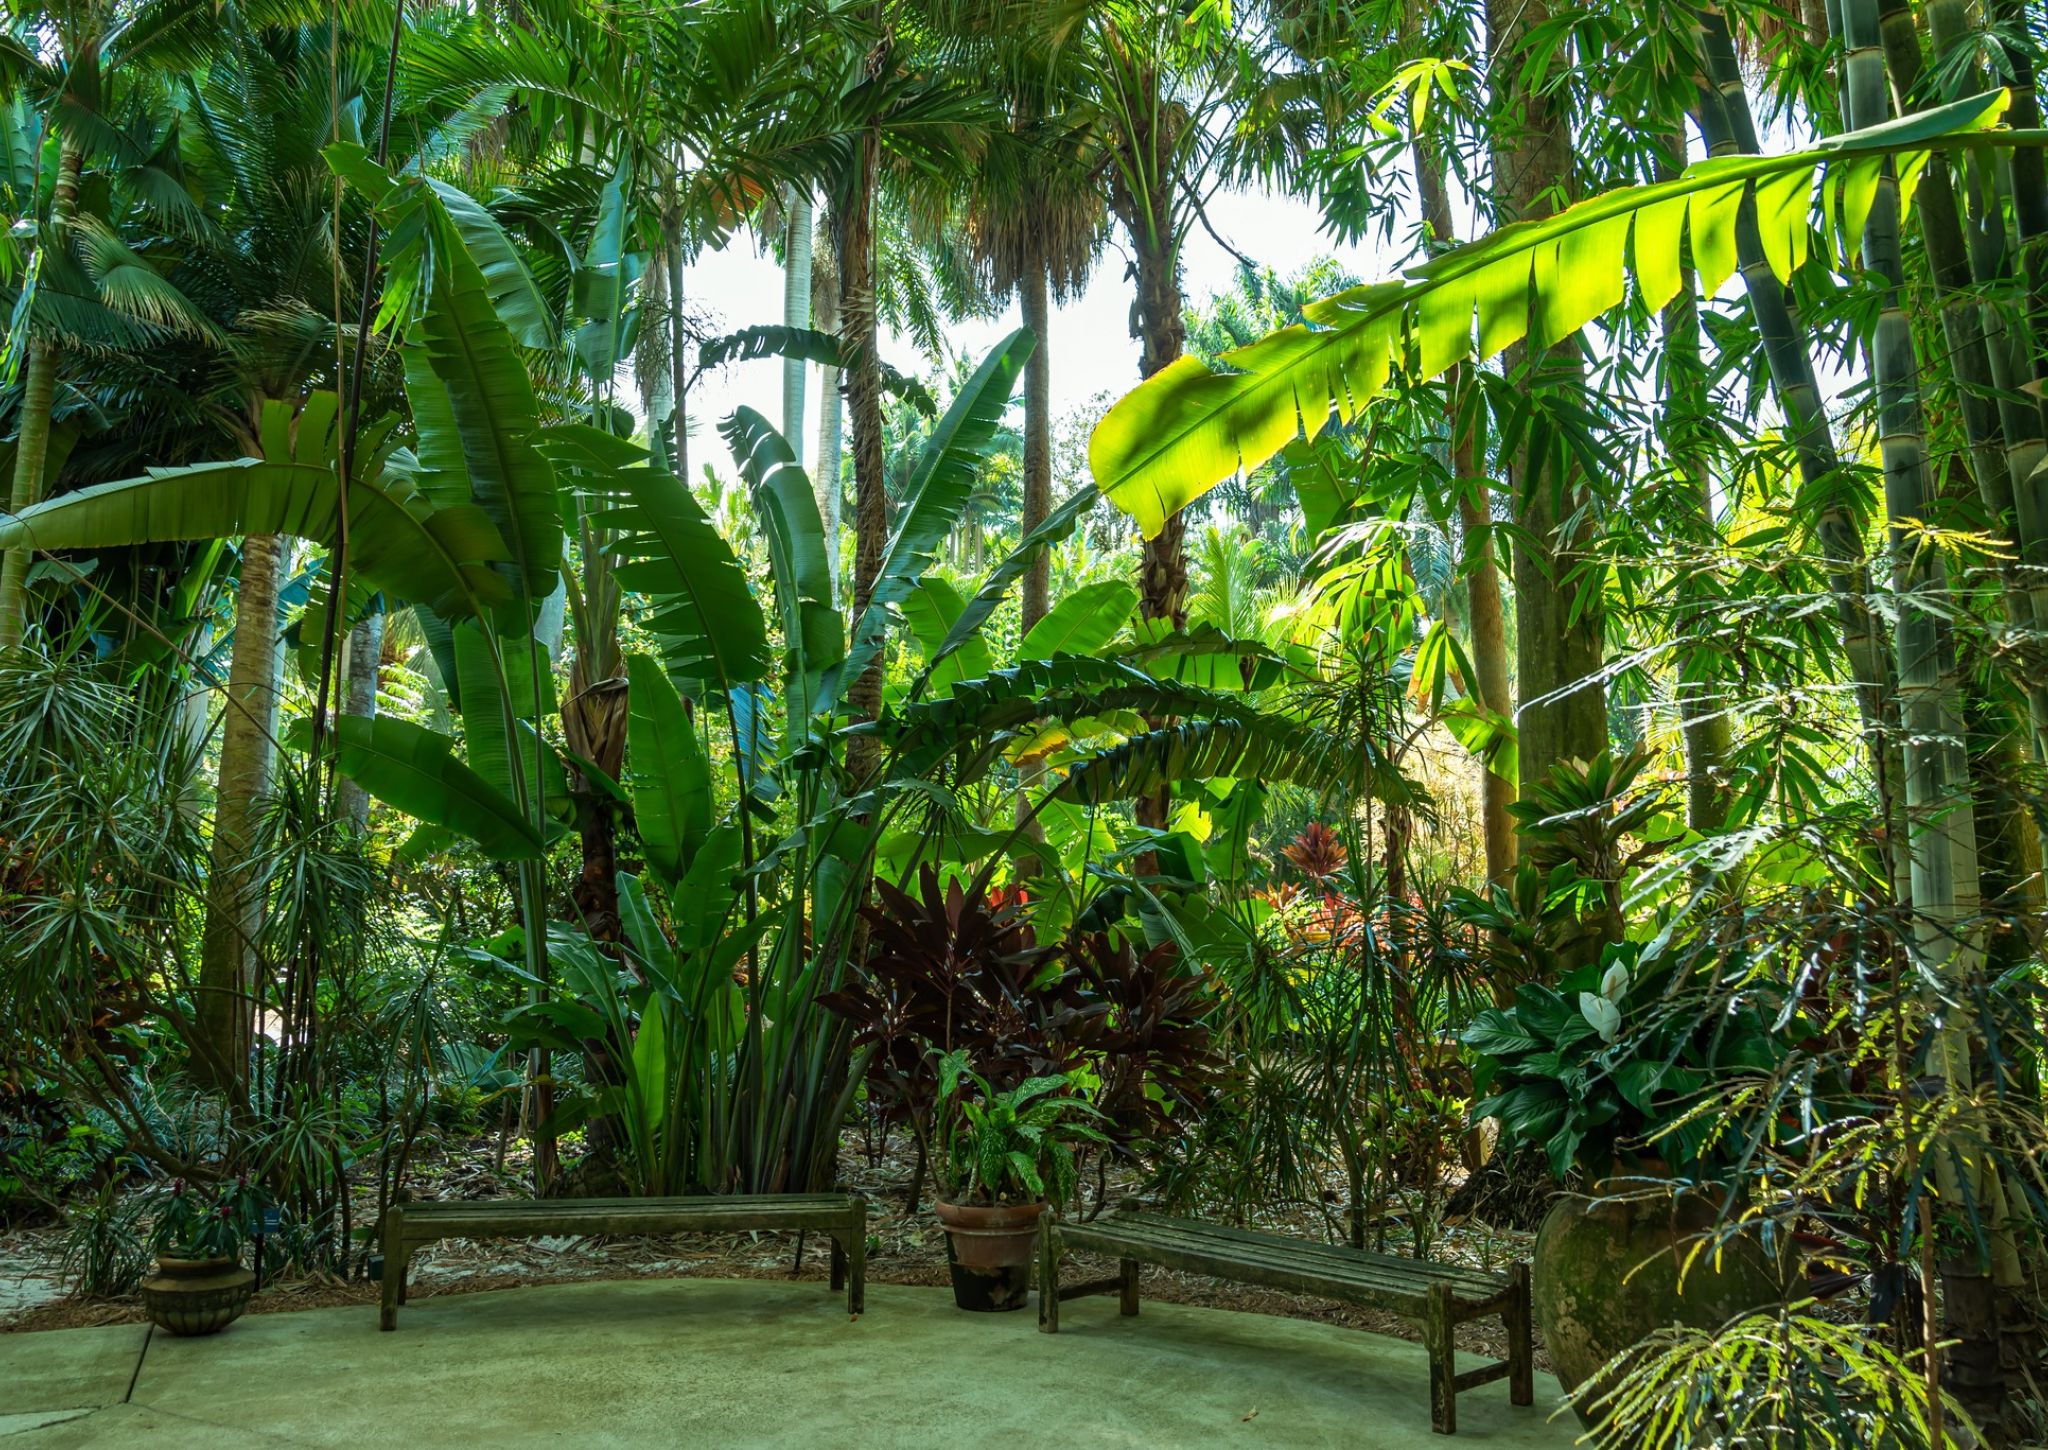 Vista de los jardines hundidos con bancos y miles de especies de plantas y flores tropicales